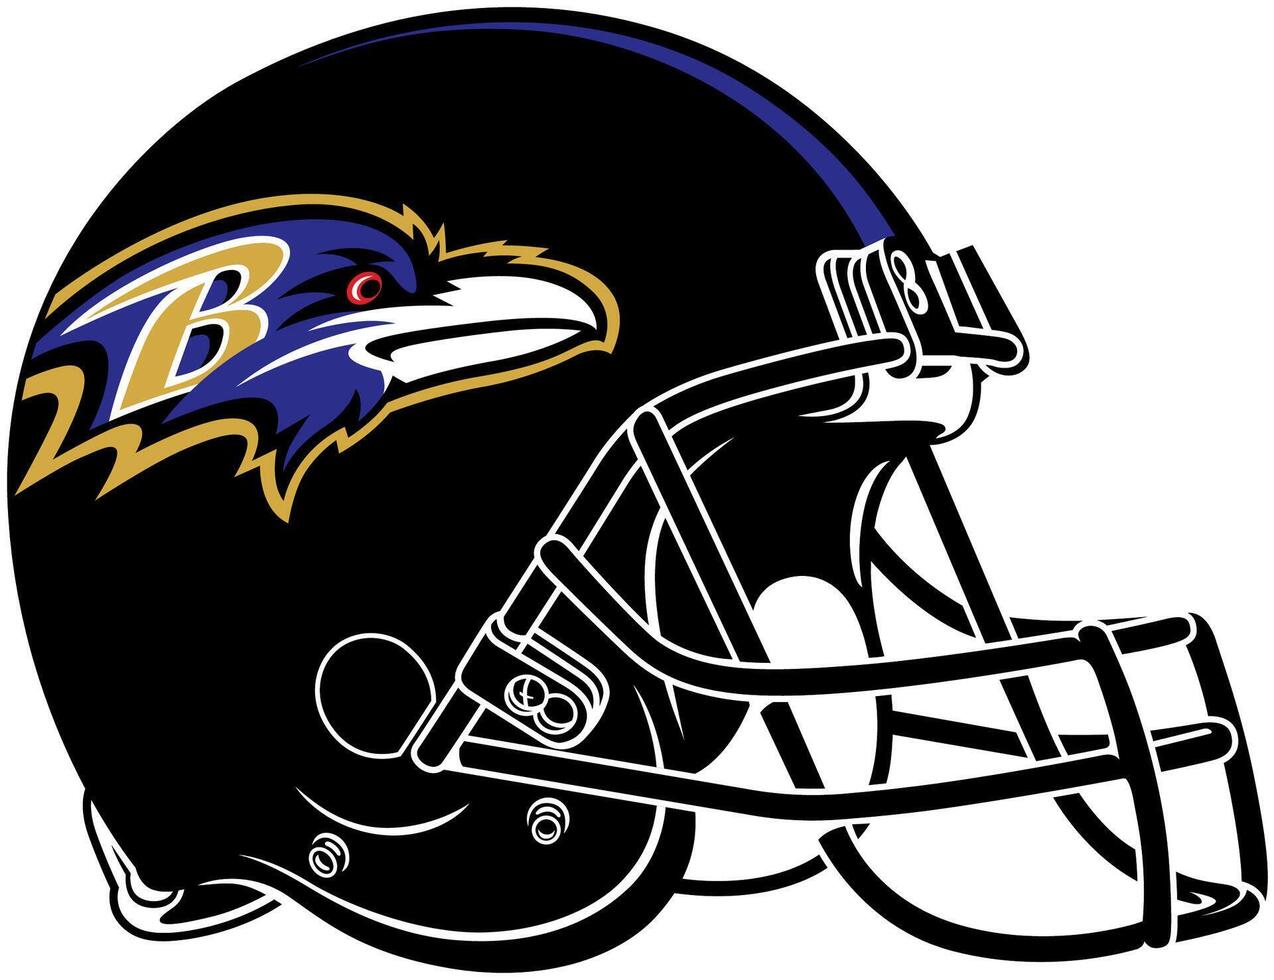 a Preto capacete do a Baltimore corvos americano futebol equipe vetor